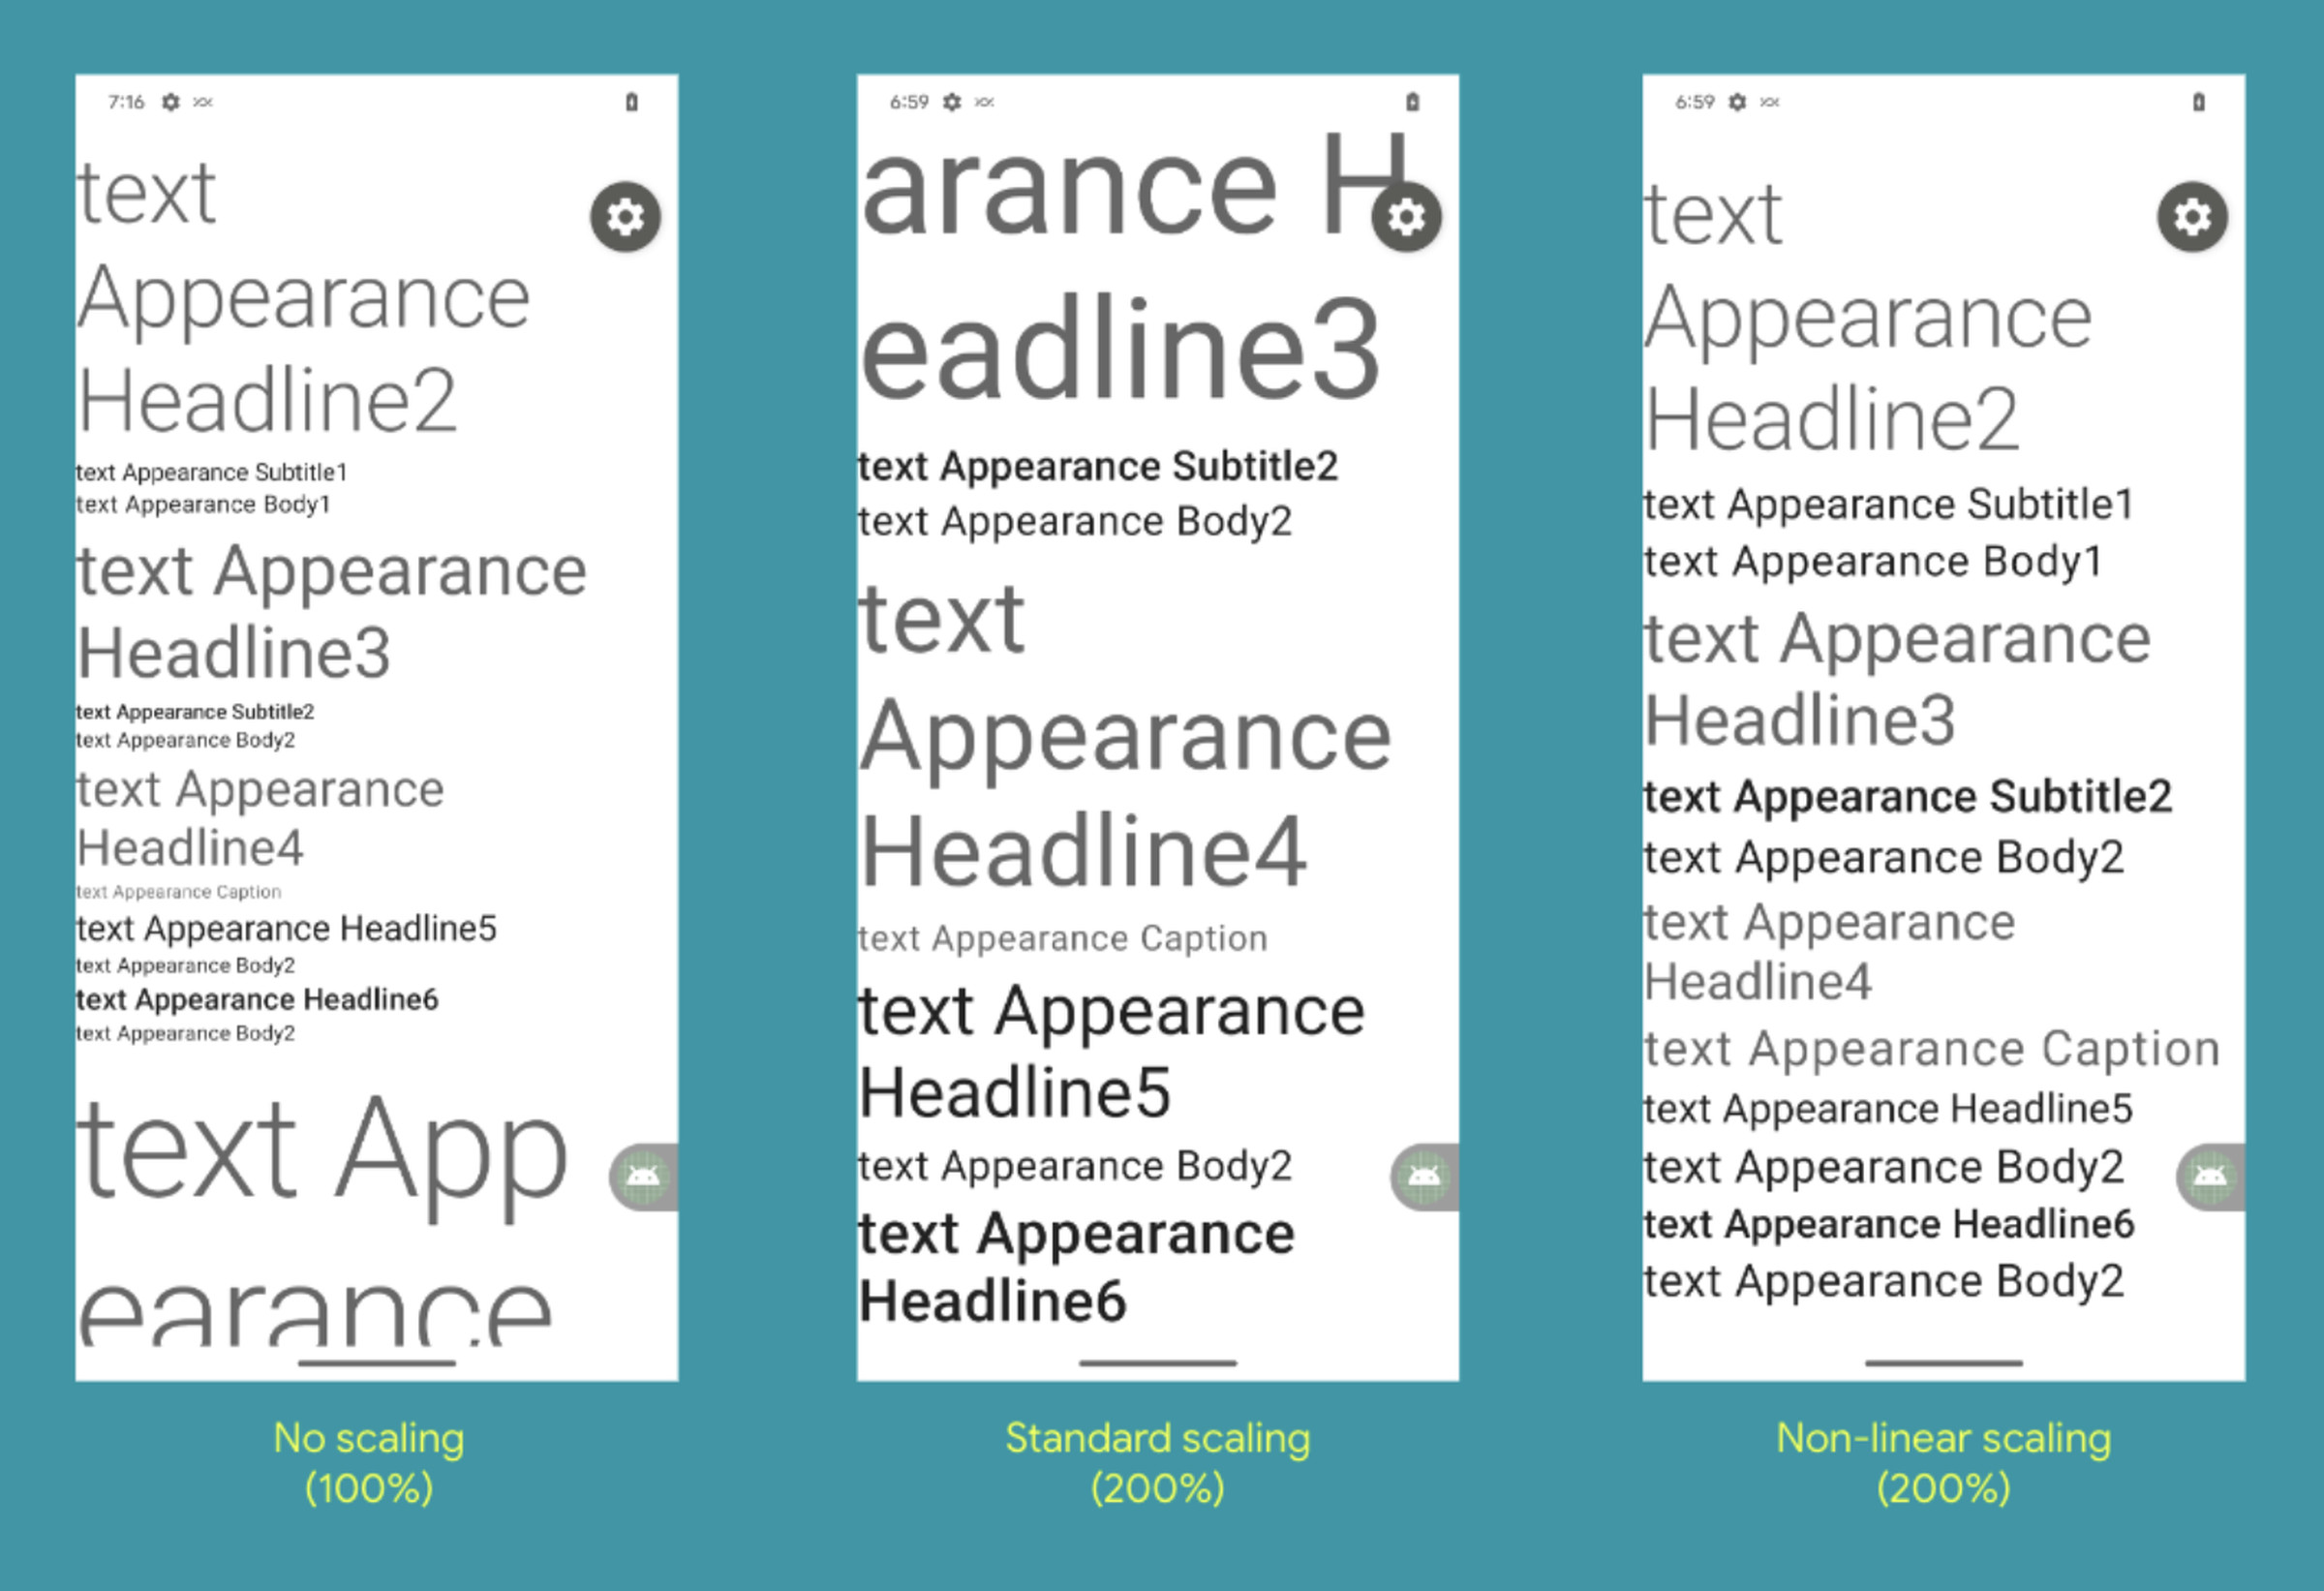 Знімок екрана, на якому показано нормальний розмір тексту та дві різні версії 200-відсоткового масштабування.